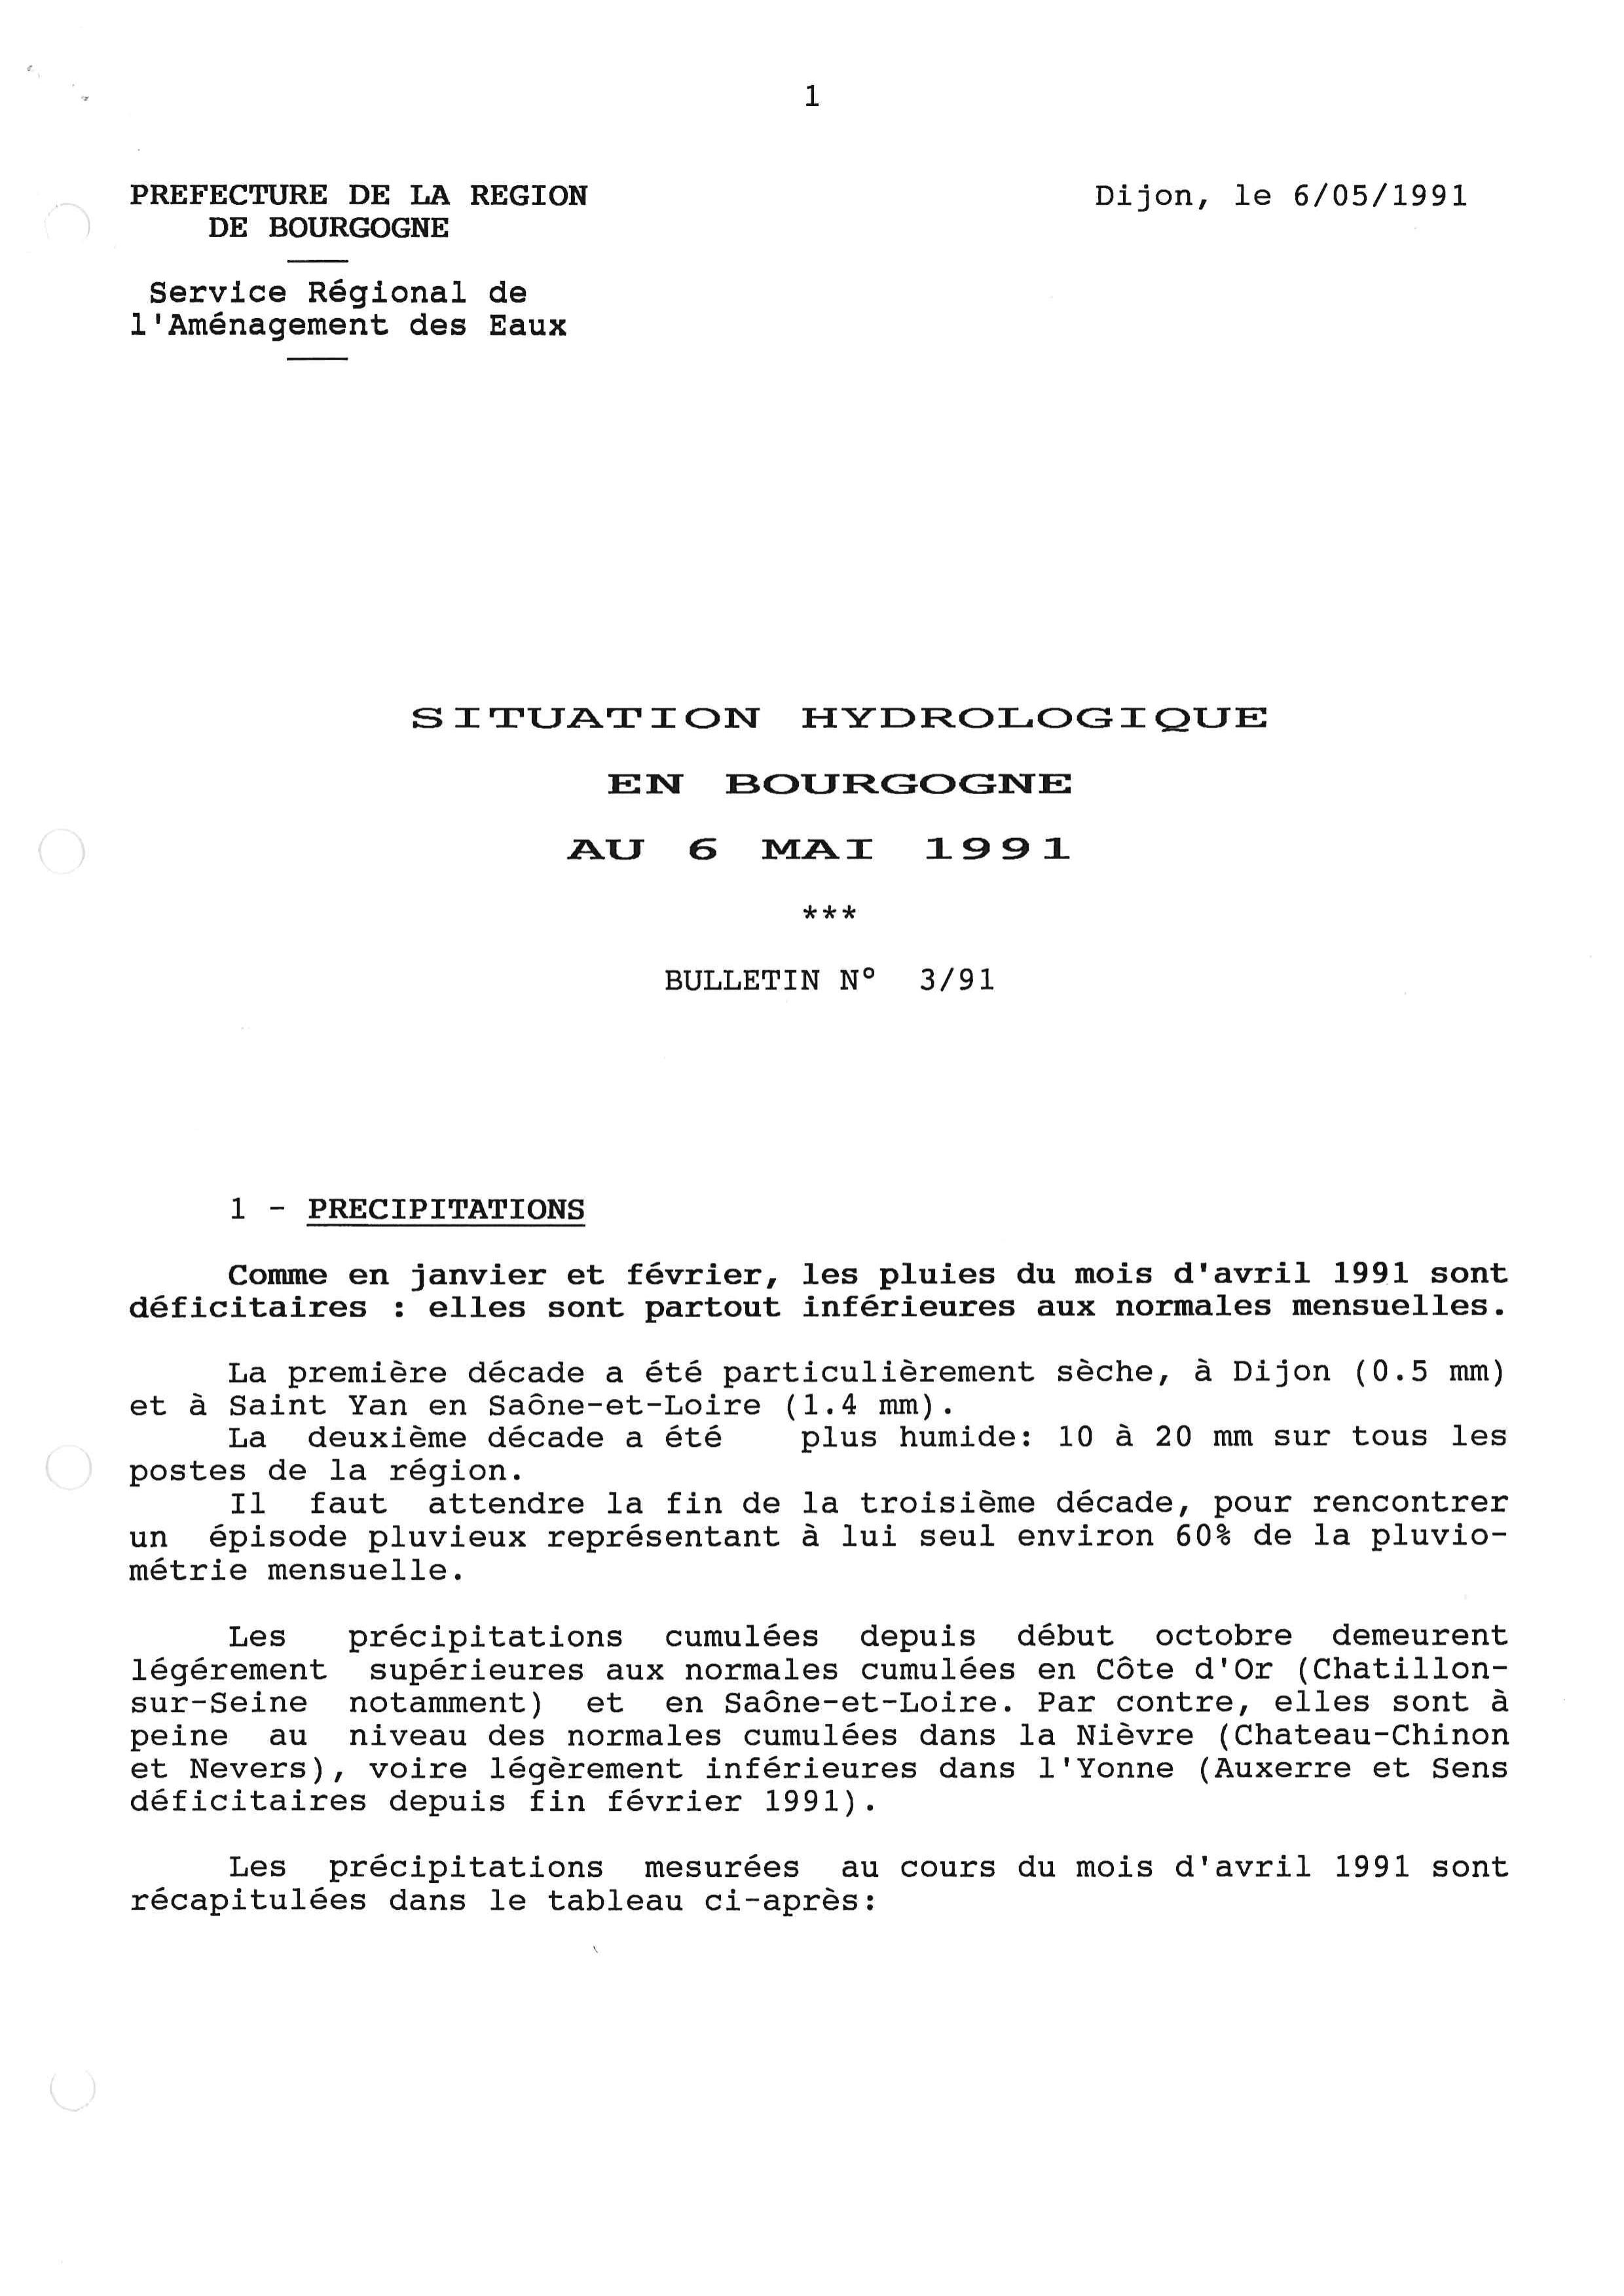 Bulletin hydrologique du mois d'avril 1991